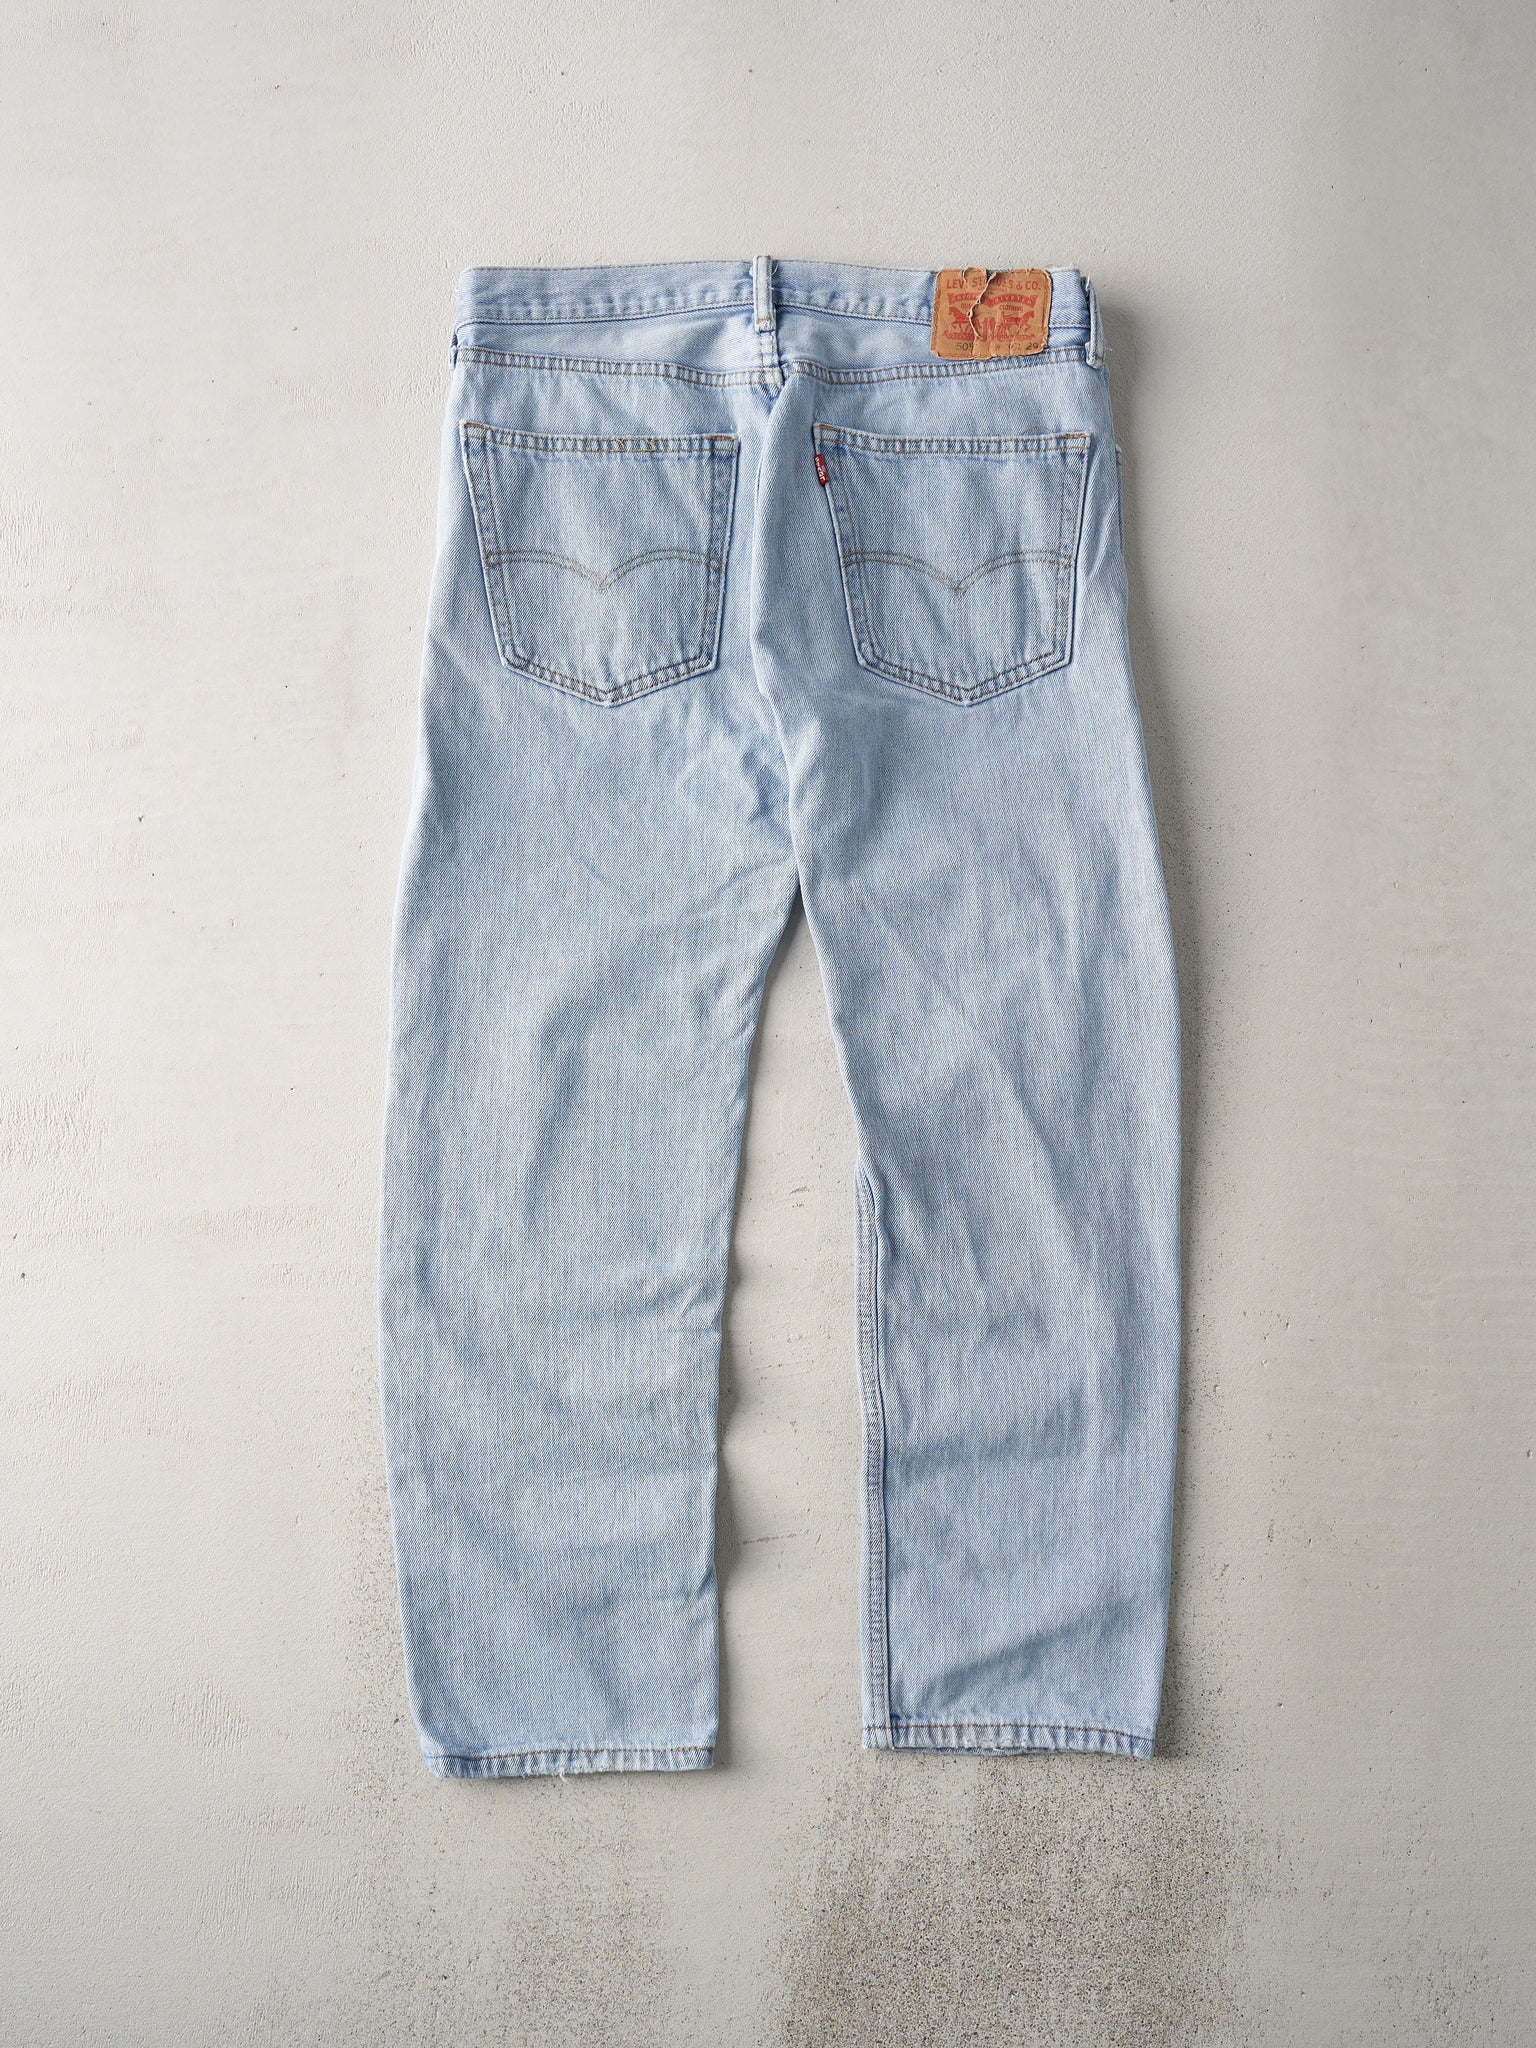 Vintage 90s Light Wash Levis 505 Jeans (34x28)